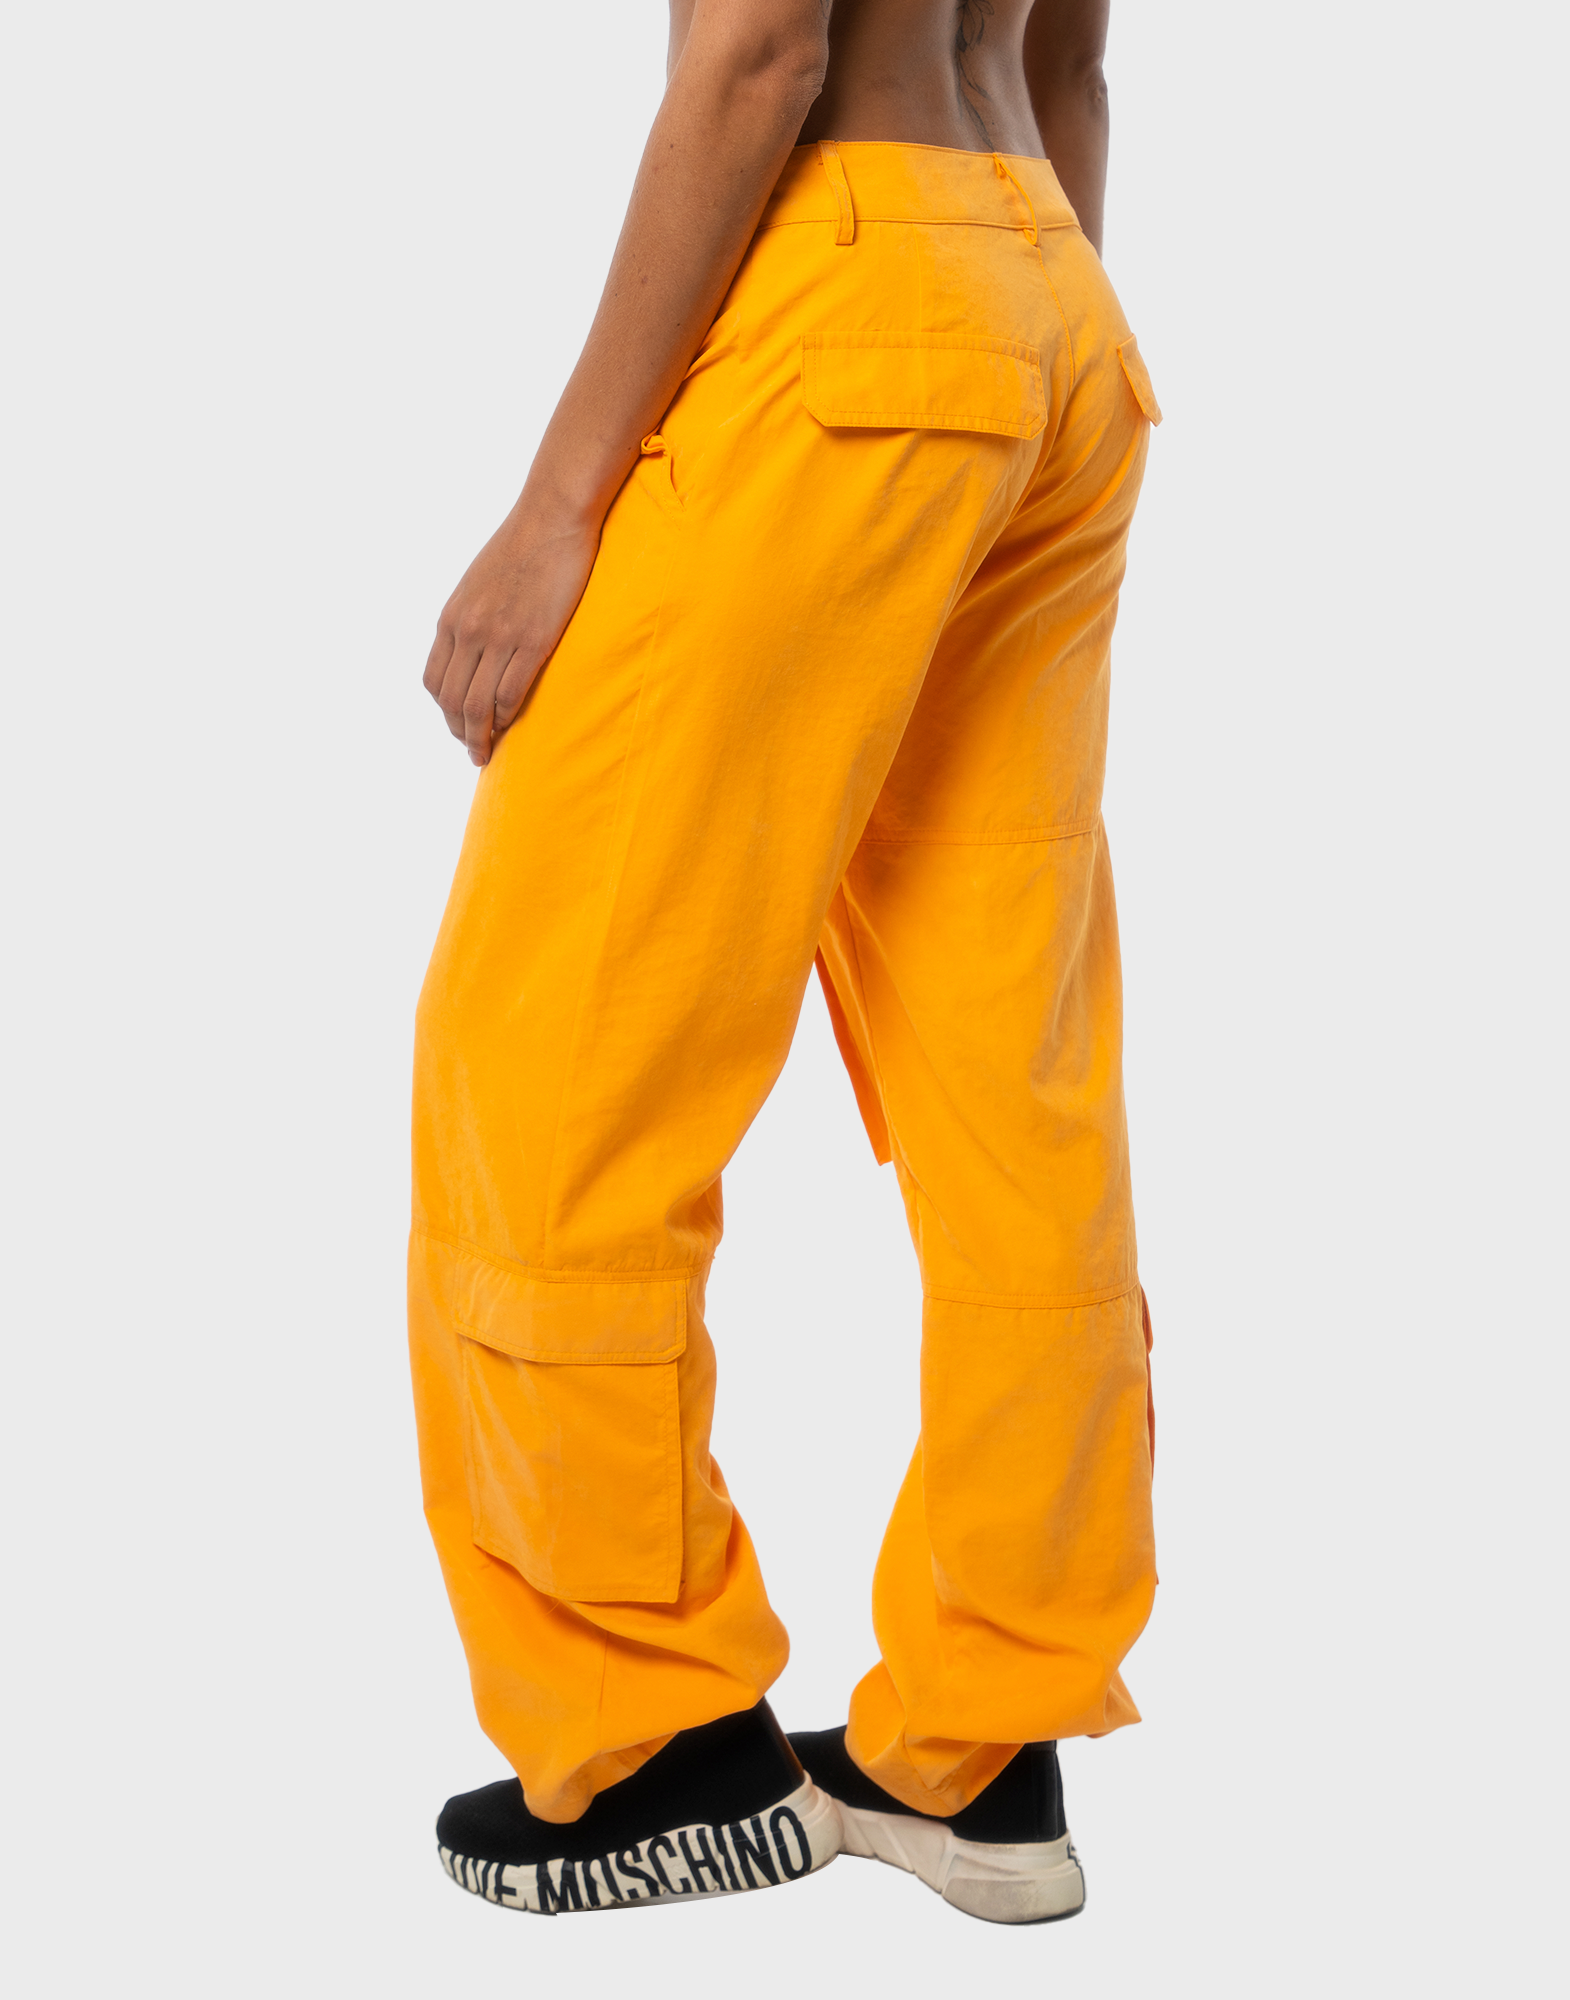 pantalón ancho naranja – bgb